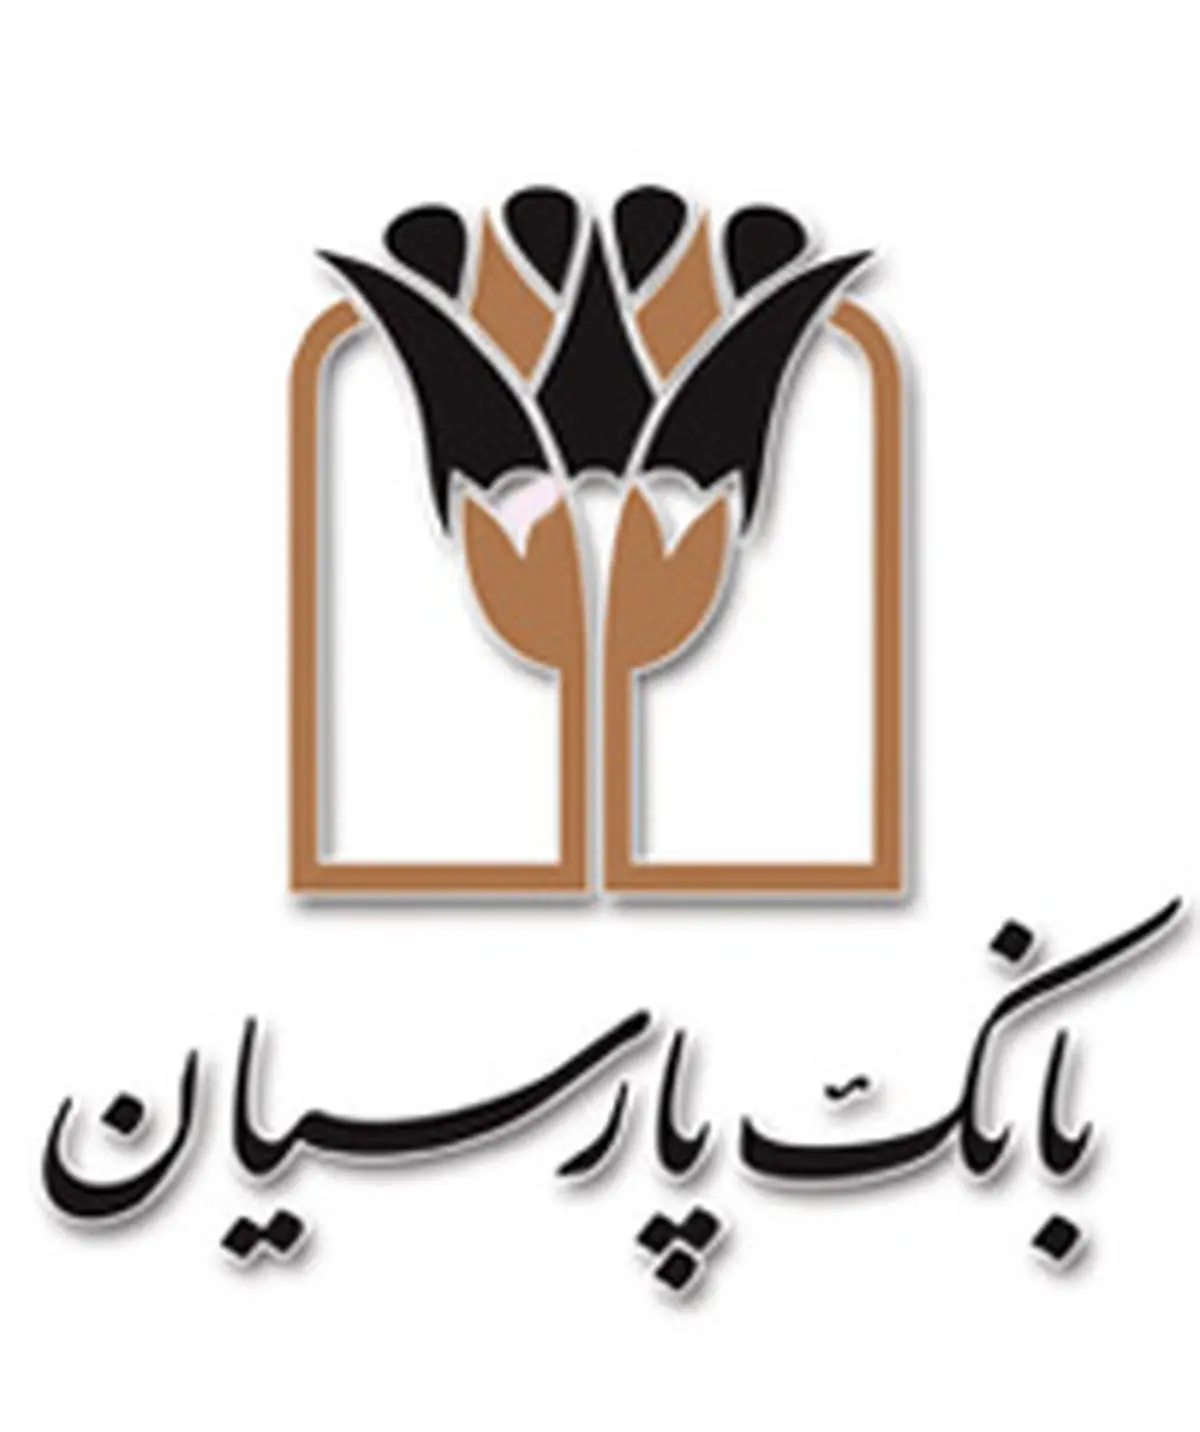 بانک پارسیان از پشتوانه های اجرای صنعت پتروشیمی در کشور است